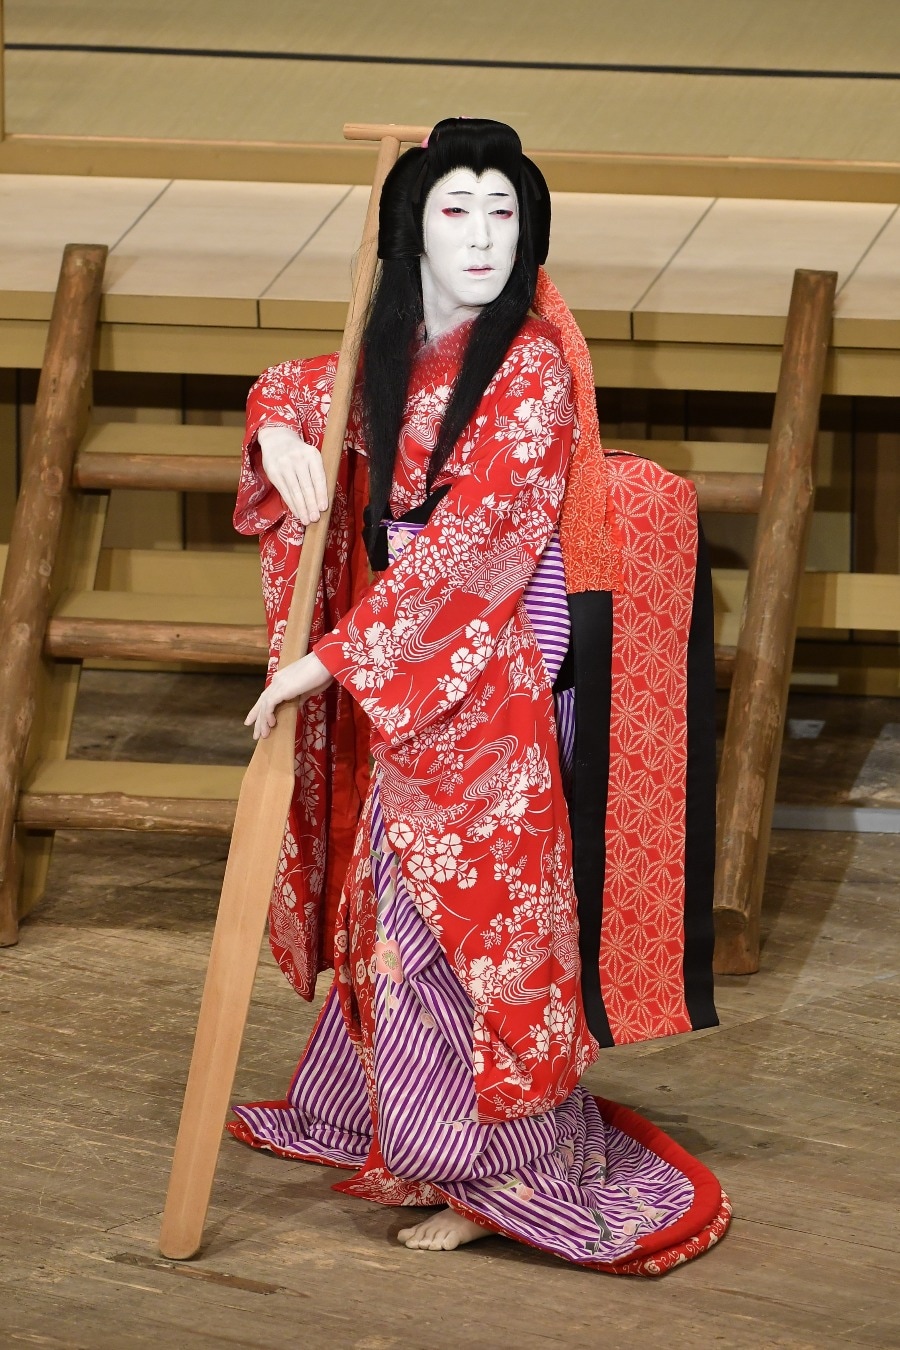 2019年12月歌舞伎座『神霊矢口渡』より。